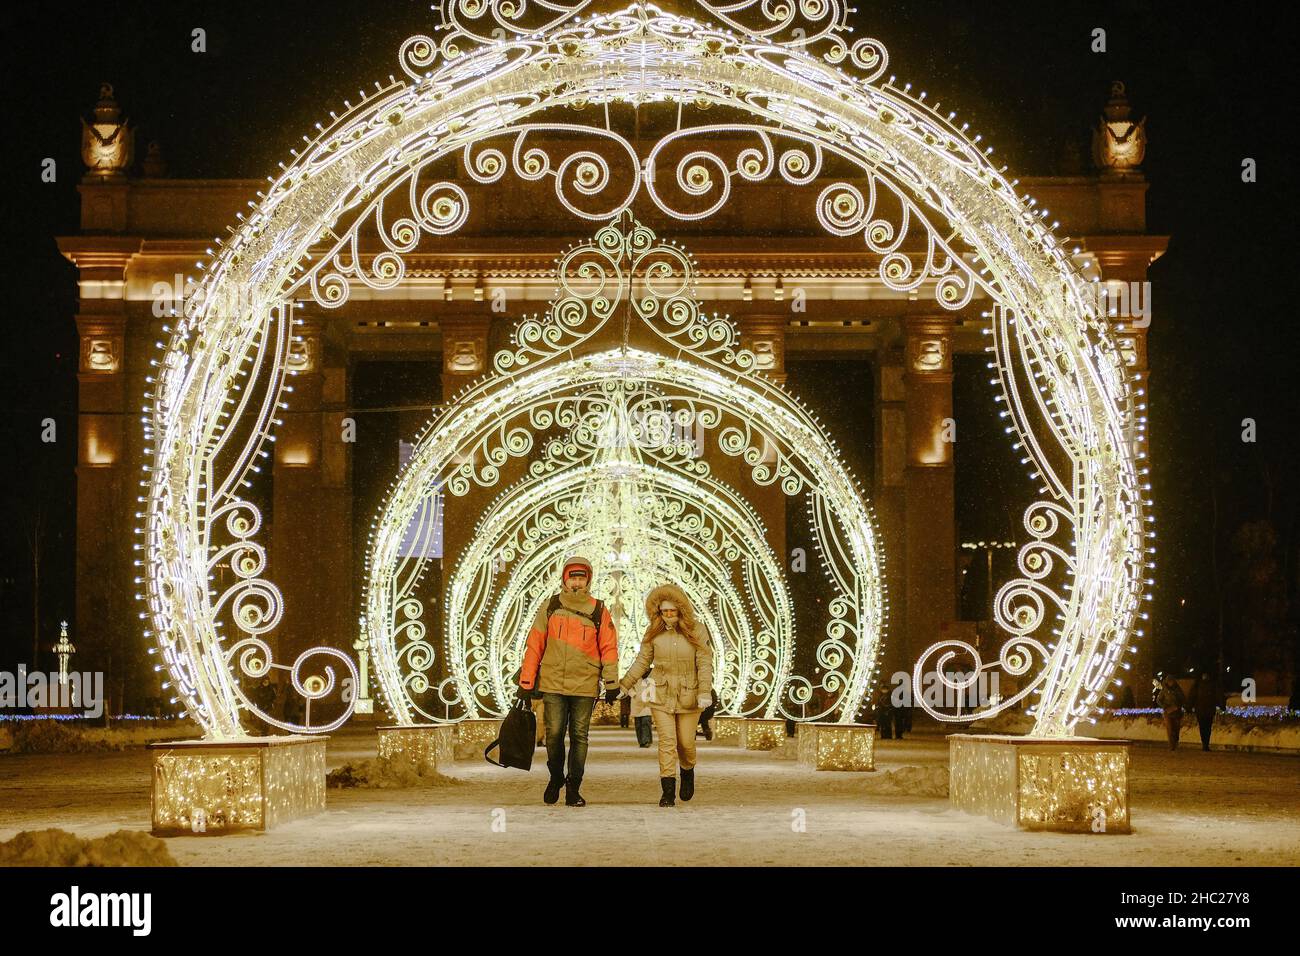 (211221) -- MOSKAU, 21. Dezember 2021 (Xinhua) -- Menschen gehen am 21. Dezember 2021 in der VDNH (Ausstellung der Errungenschaften der Volkswirtschaft) in Moskau, Russland, durch die Neujahrsdekorationen. (Xinhua/Evgeny Sinitsyn) Stockfoto